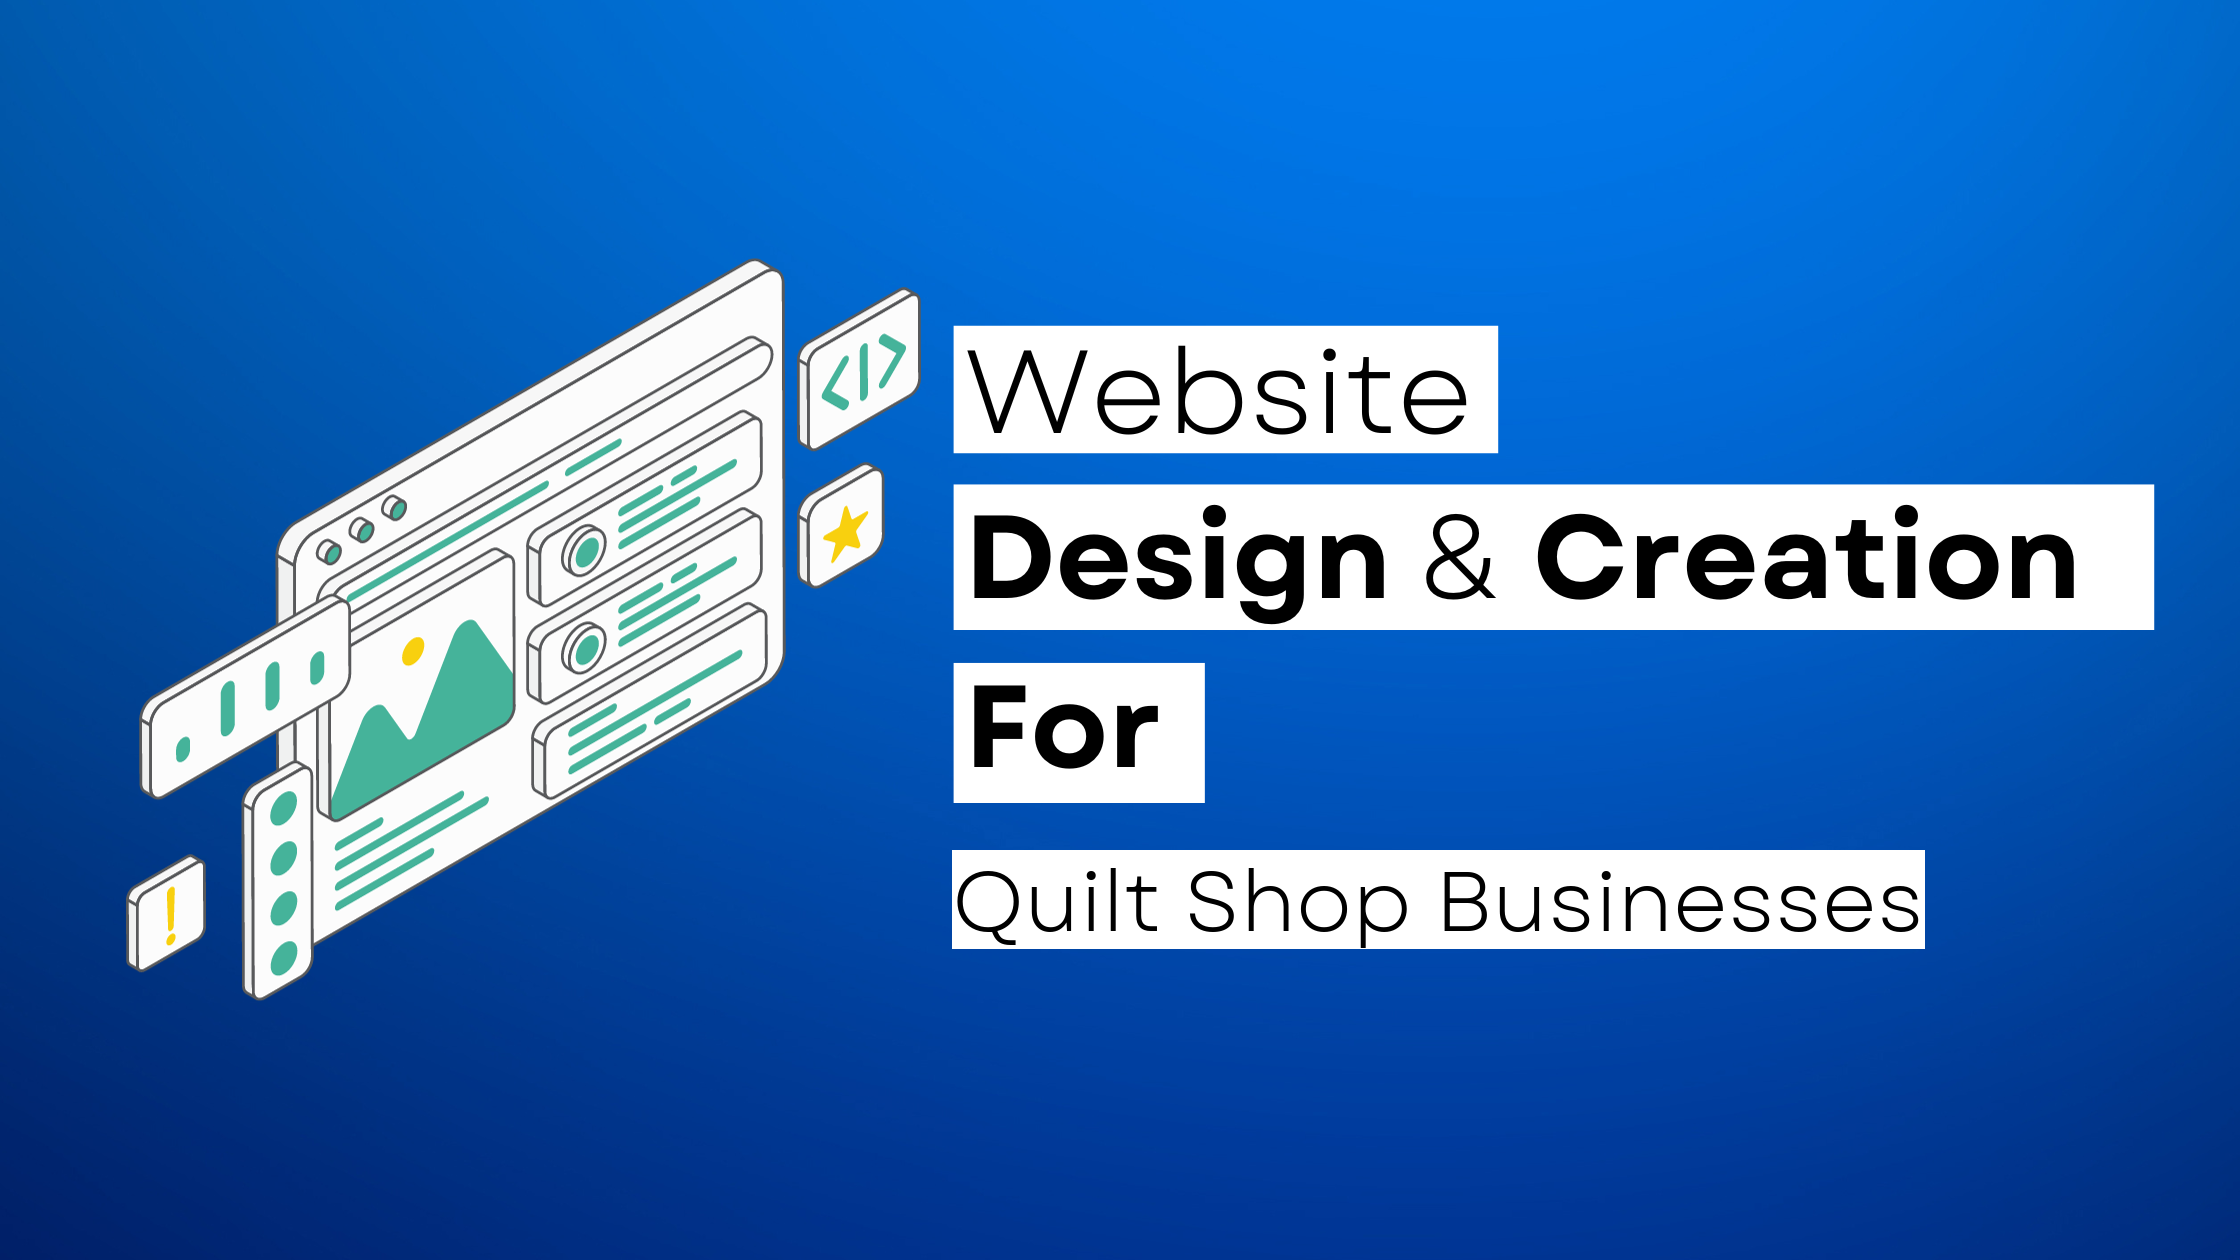 How to start a Quilt Shop website